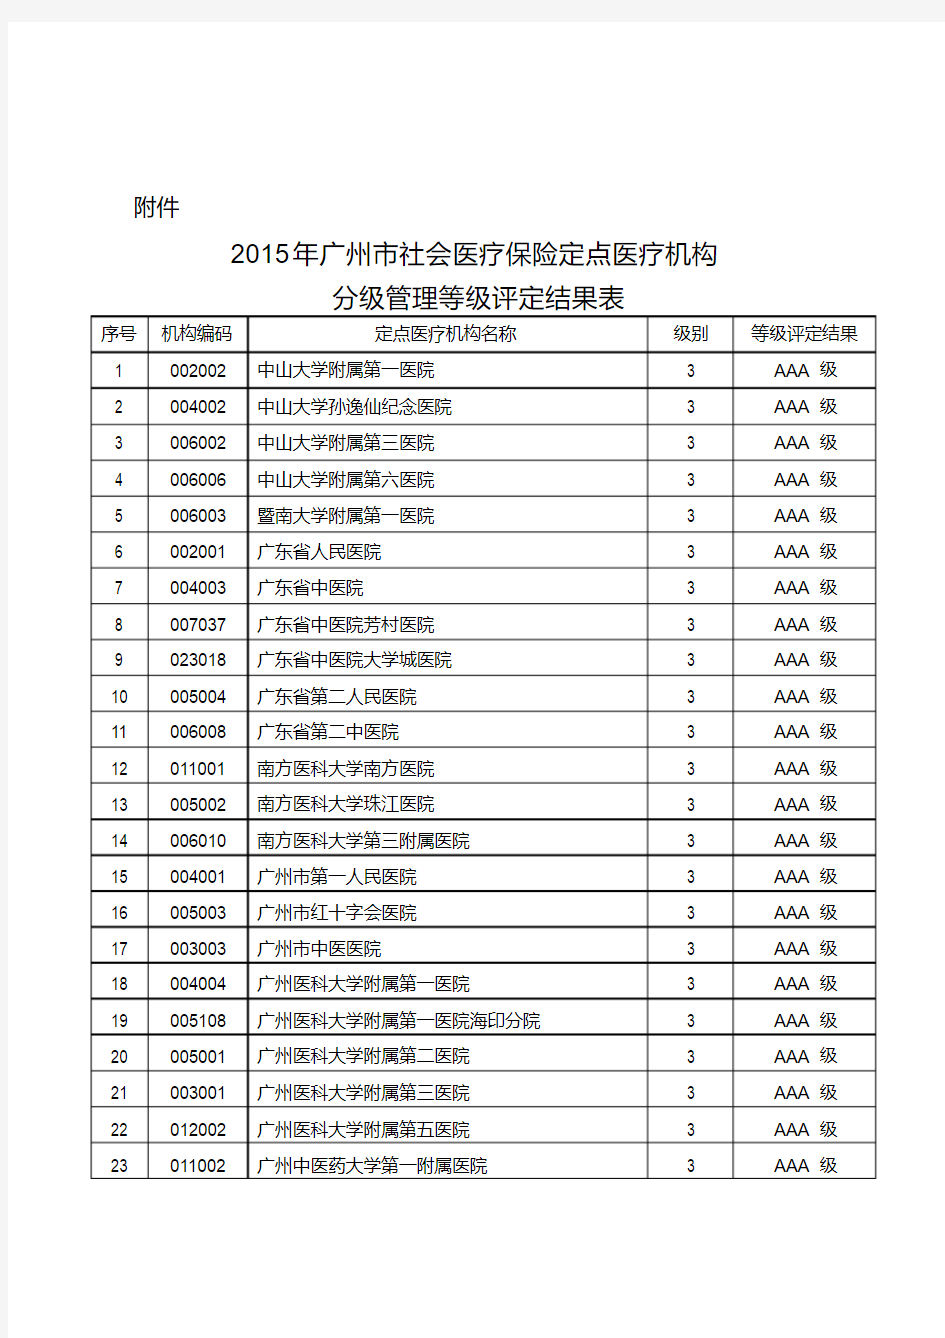 新版广州市定点医疗机构名单.pdf